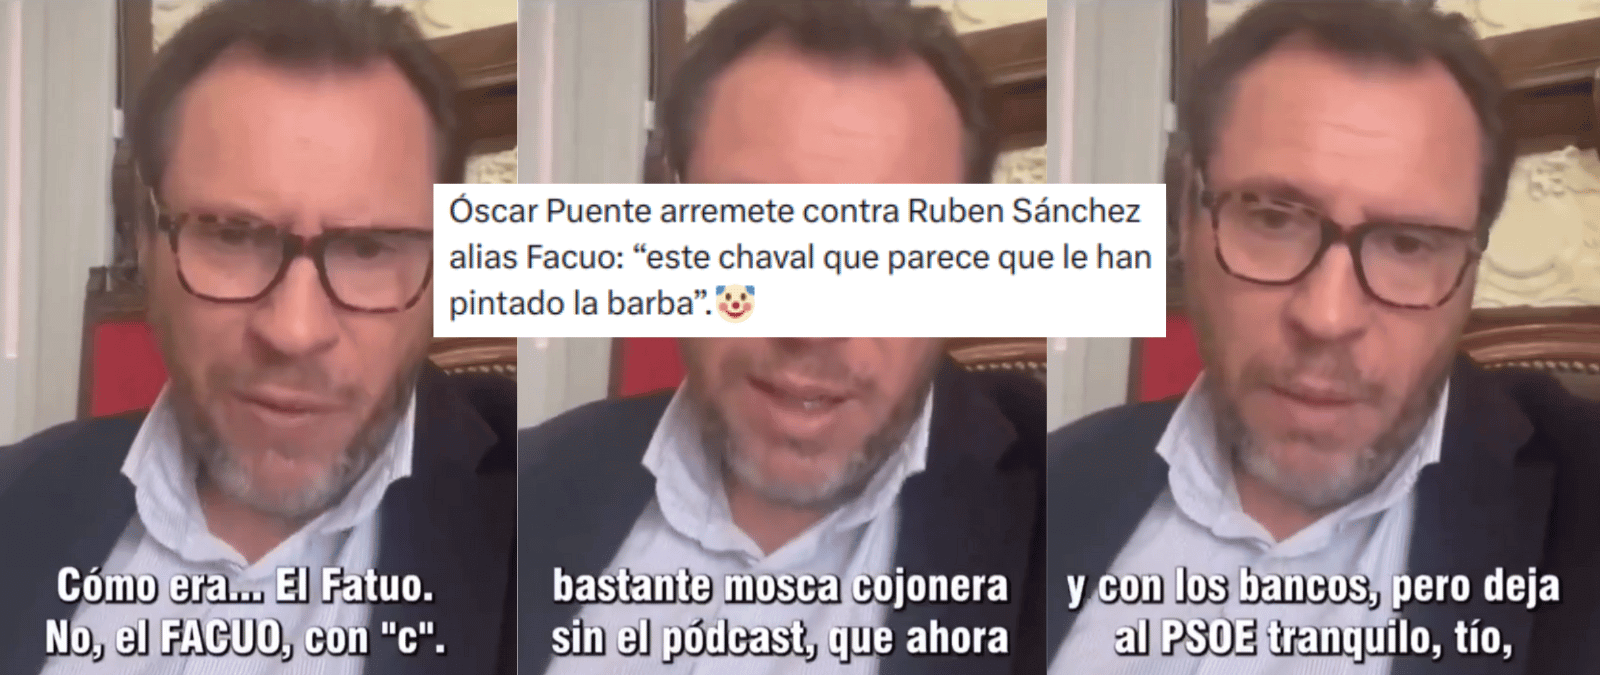 El vídeo en el que Óscar Puente ataca a Rubén Sánchez, portavoz de Facua: es una campaña promocional de un podcast sobre fraudes que se publicó en febrero de 2023